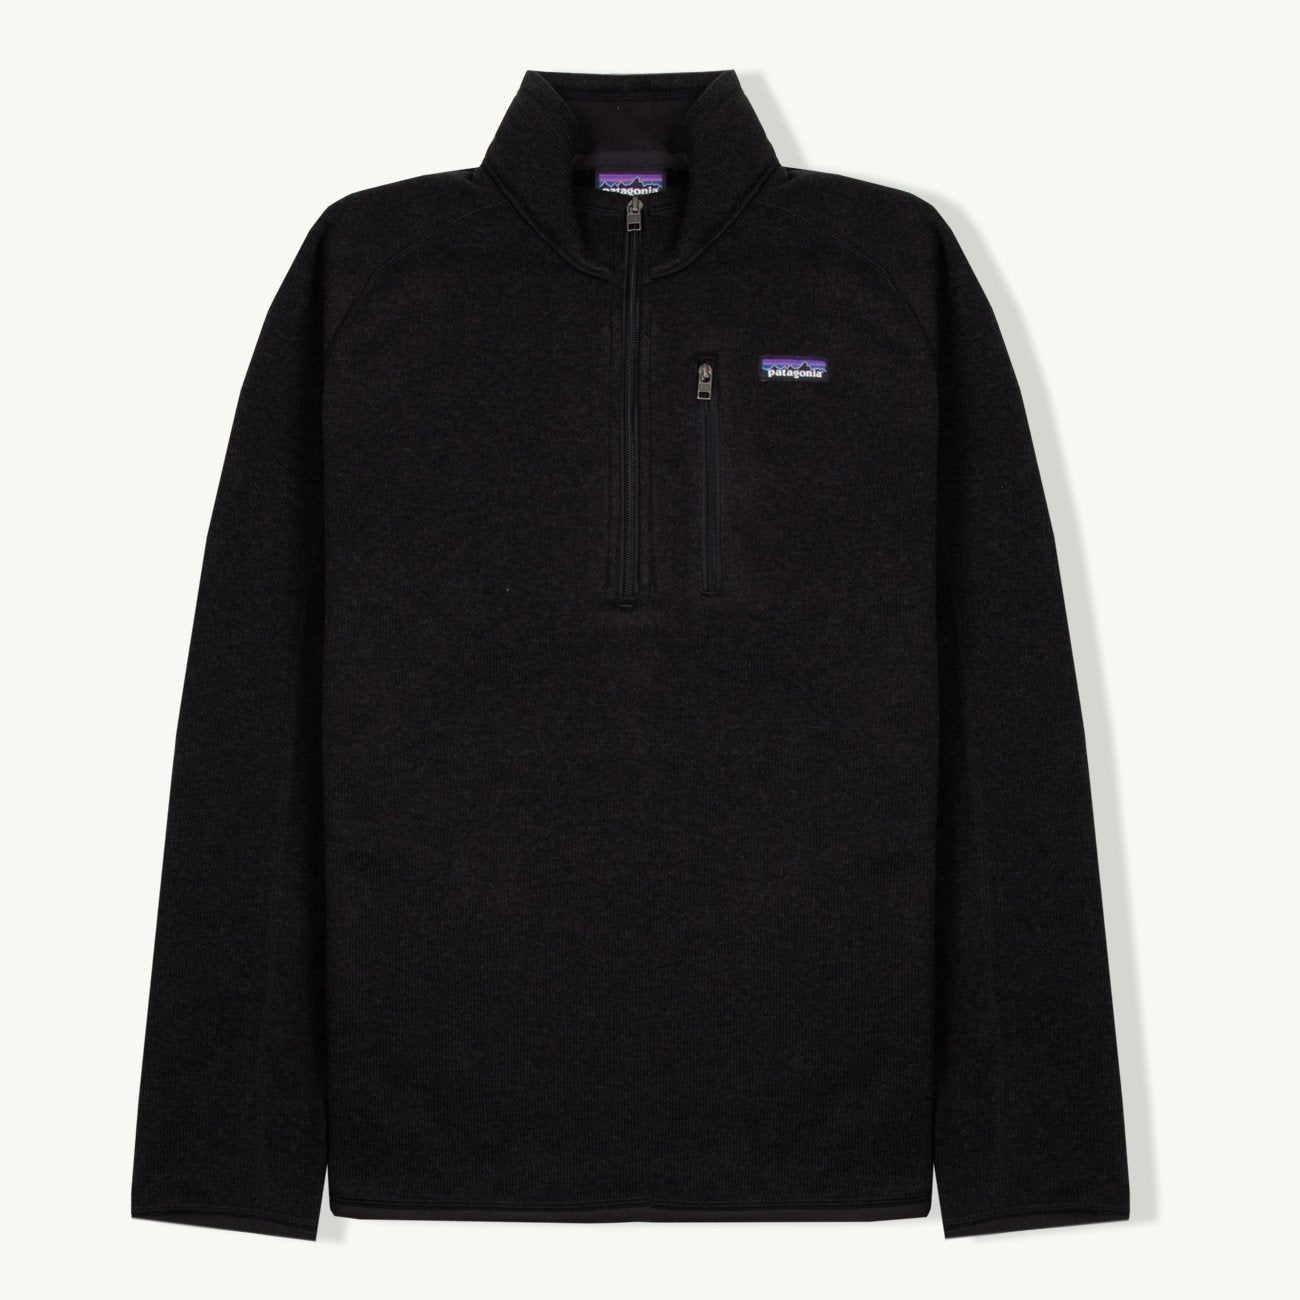 Better Sweater 1/4 Zip - Black